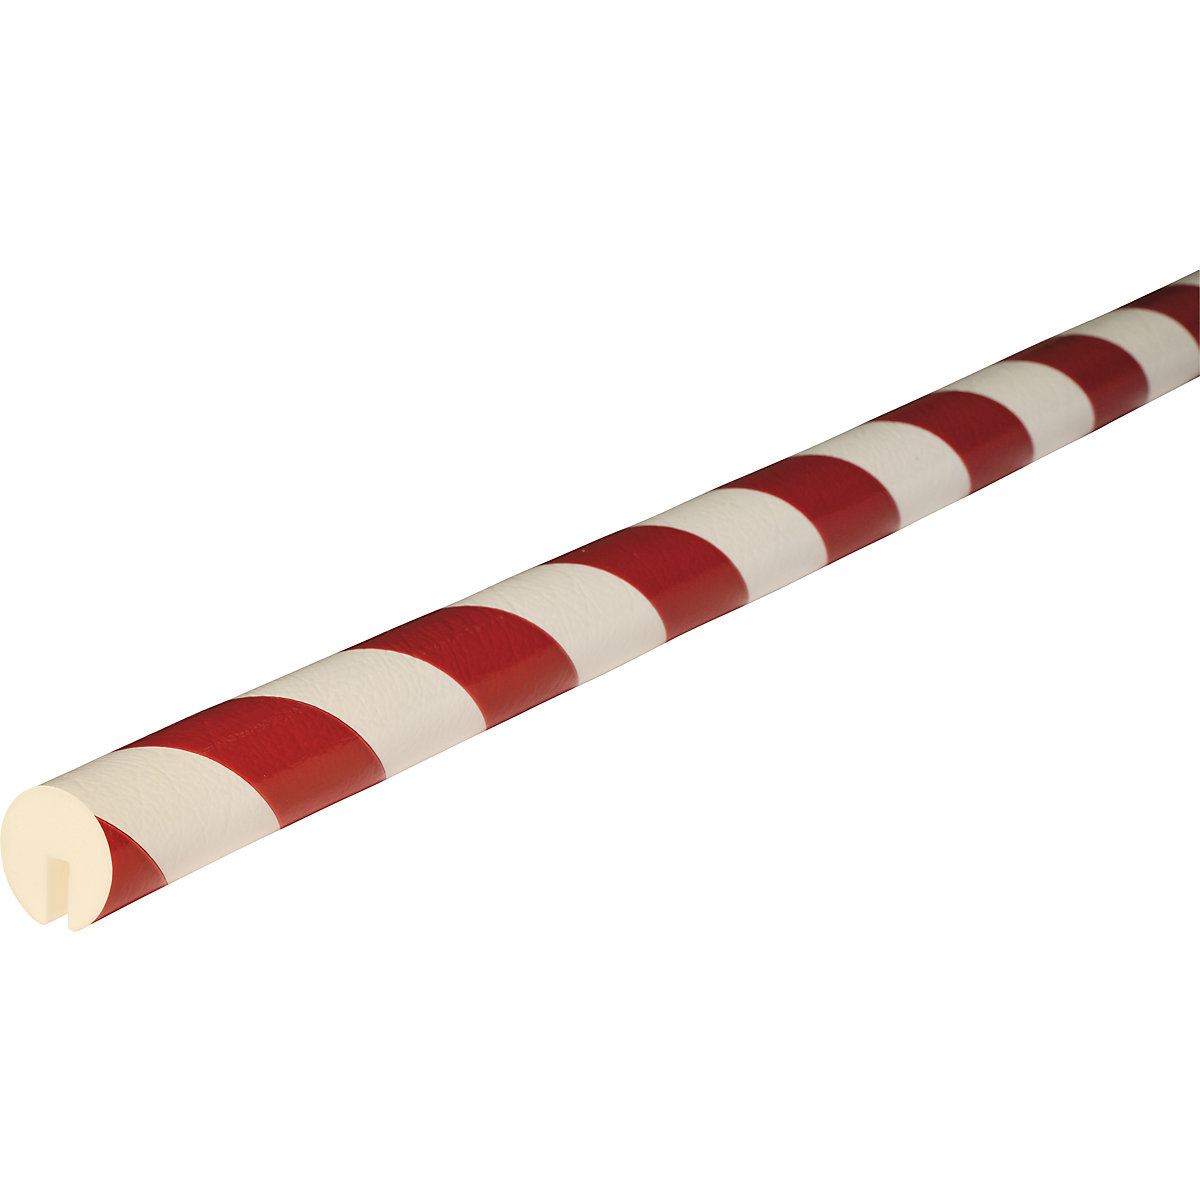 Okrawędziowanie Knuffi® – SHG, typ B, 1 rolka 5 m, czerwony / biały-17